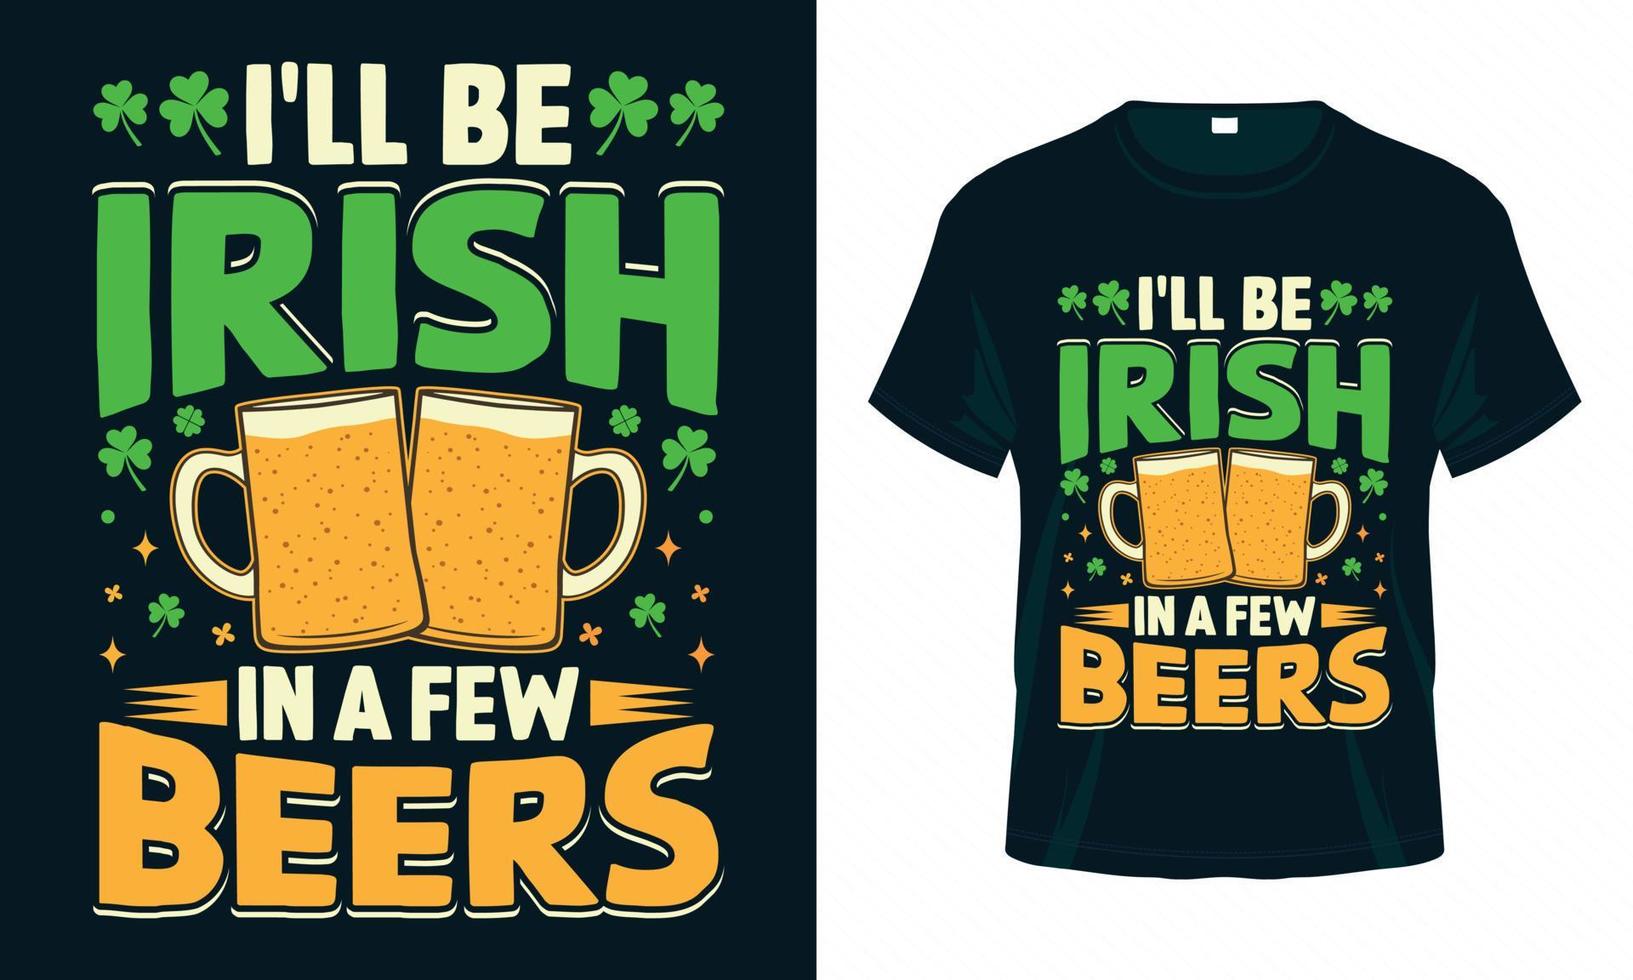 eu vou ser irlandês em algumas cervejas - st. design de camiseta engraçada do dia de patrick vetor